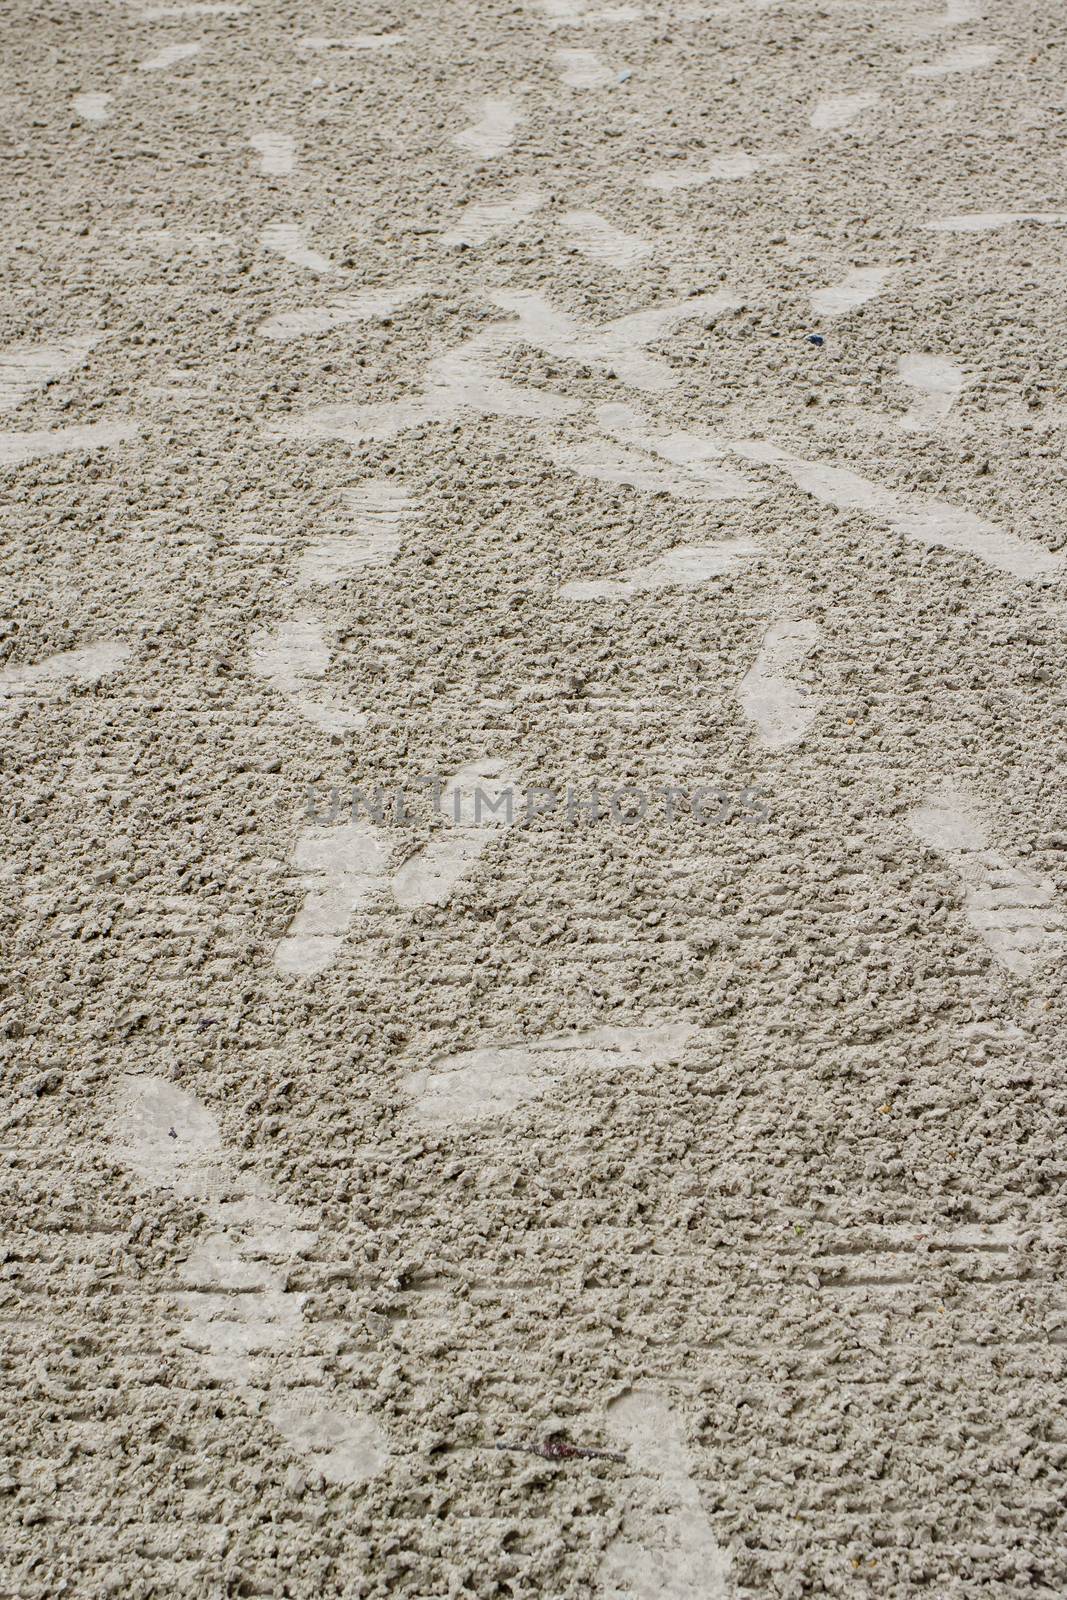 Footprints confused on sand